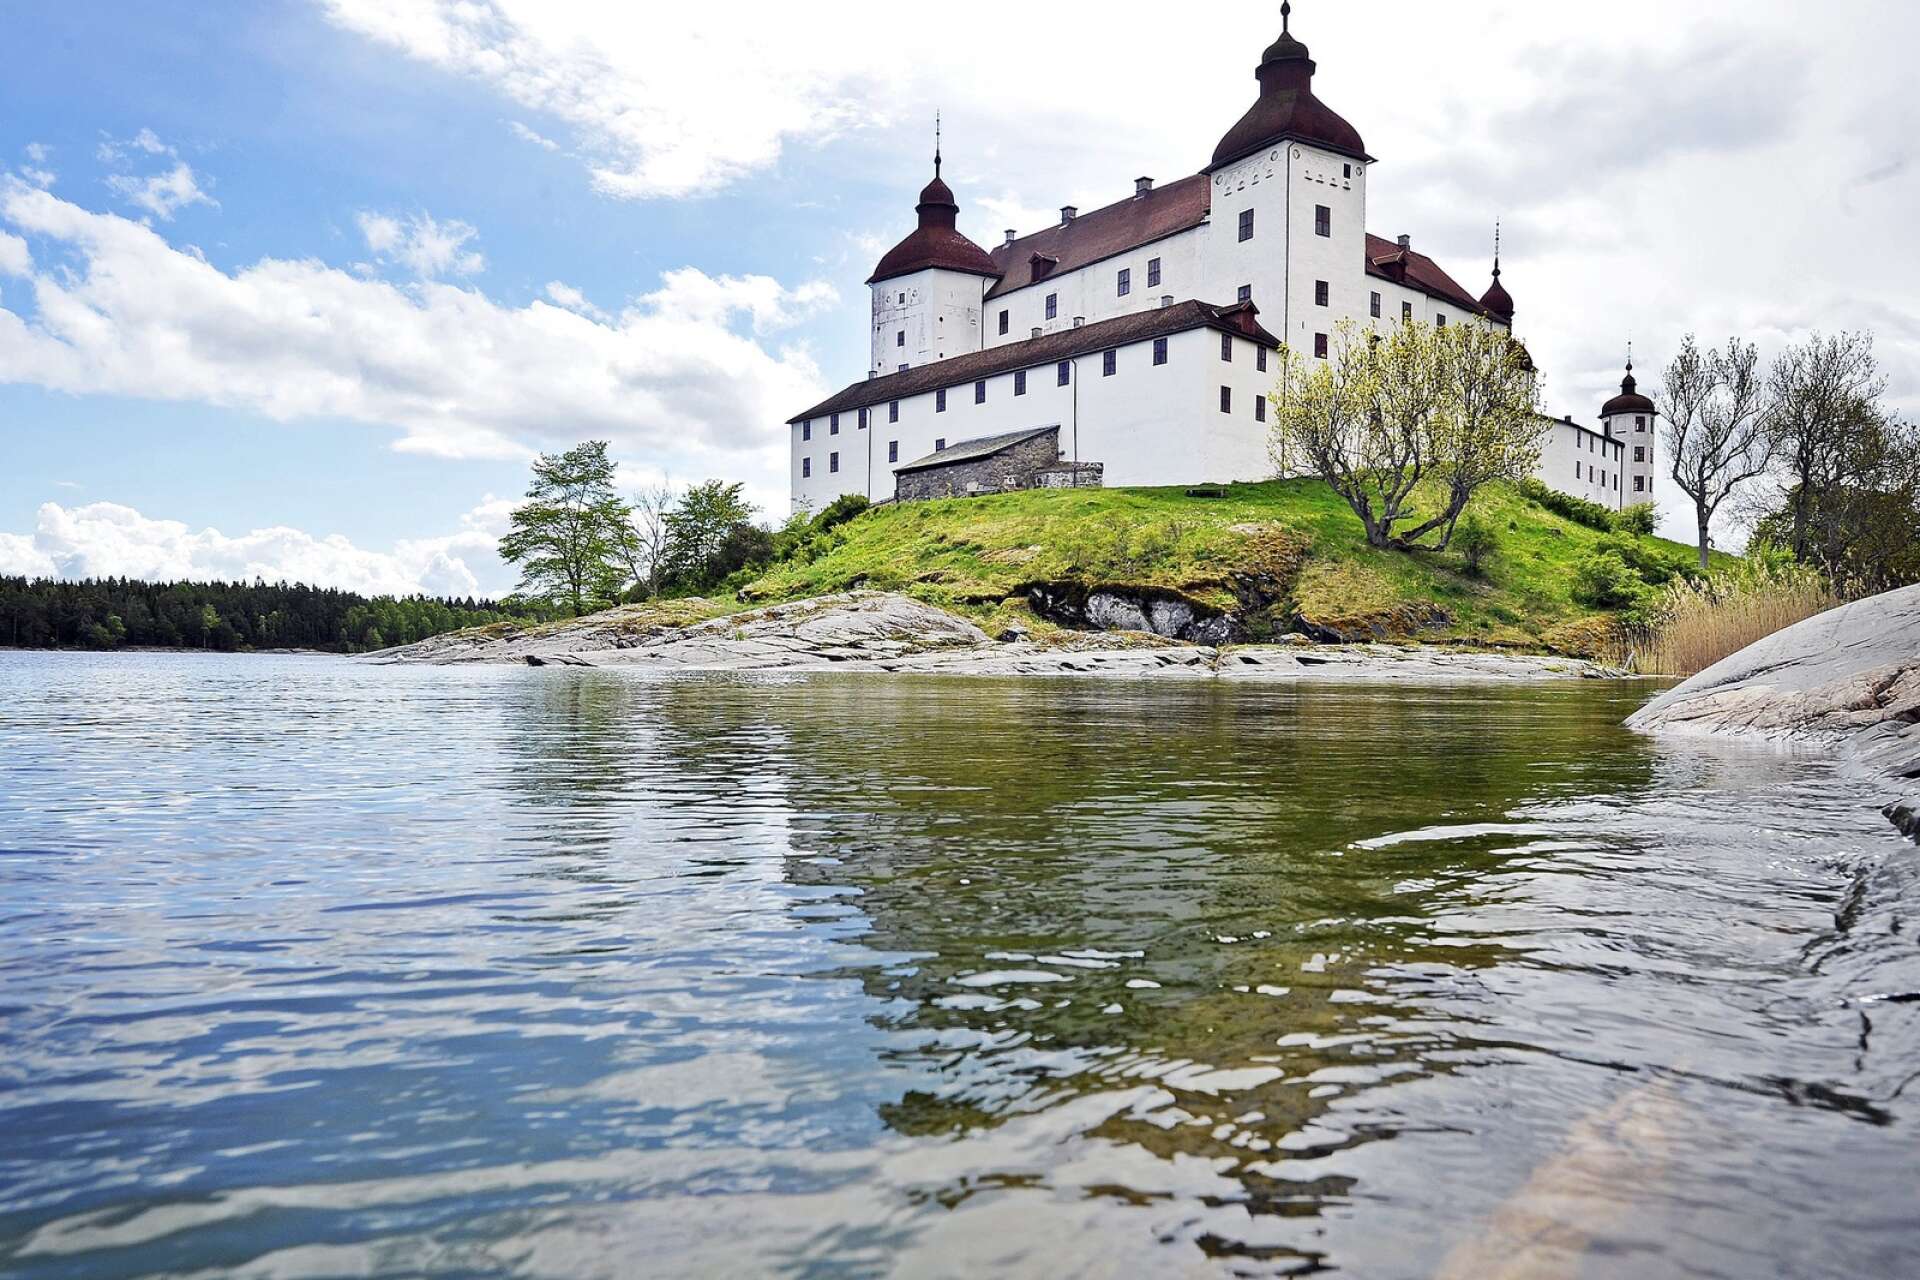 Ett populärt besöksmål som Läckö slott behöver kunna erbjuda service till elbilar. Just nu installeras 20 laddplatser på parkeringen.